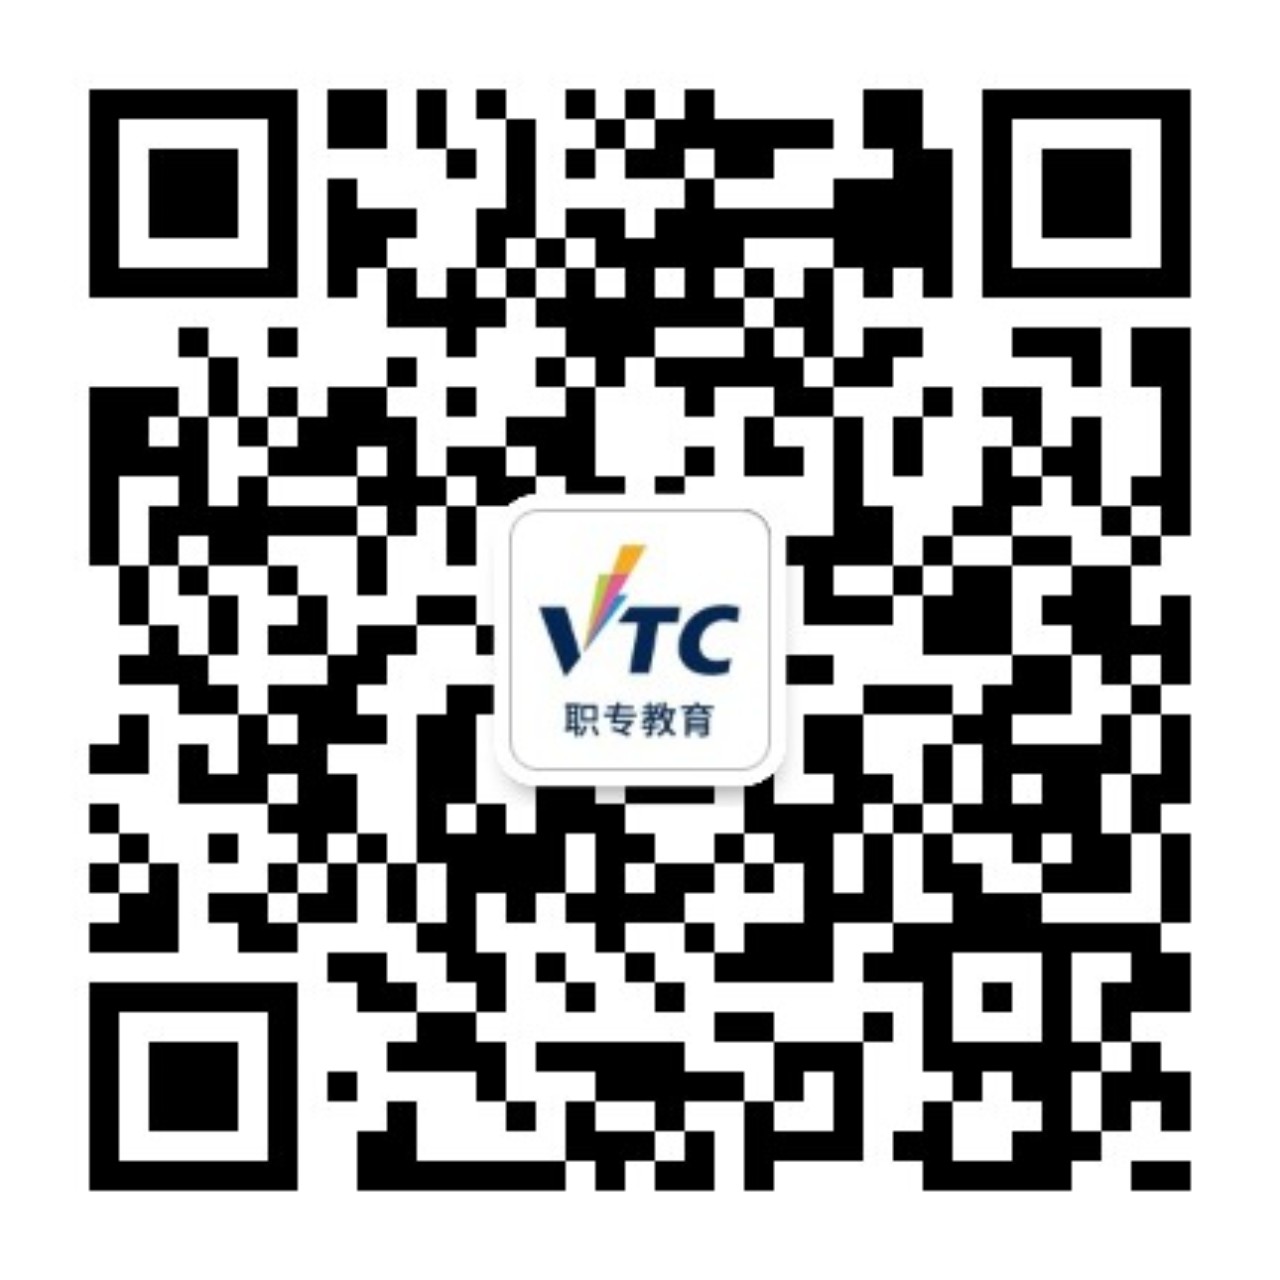 香港VTC职专教育信息平台微信号